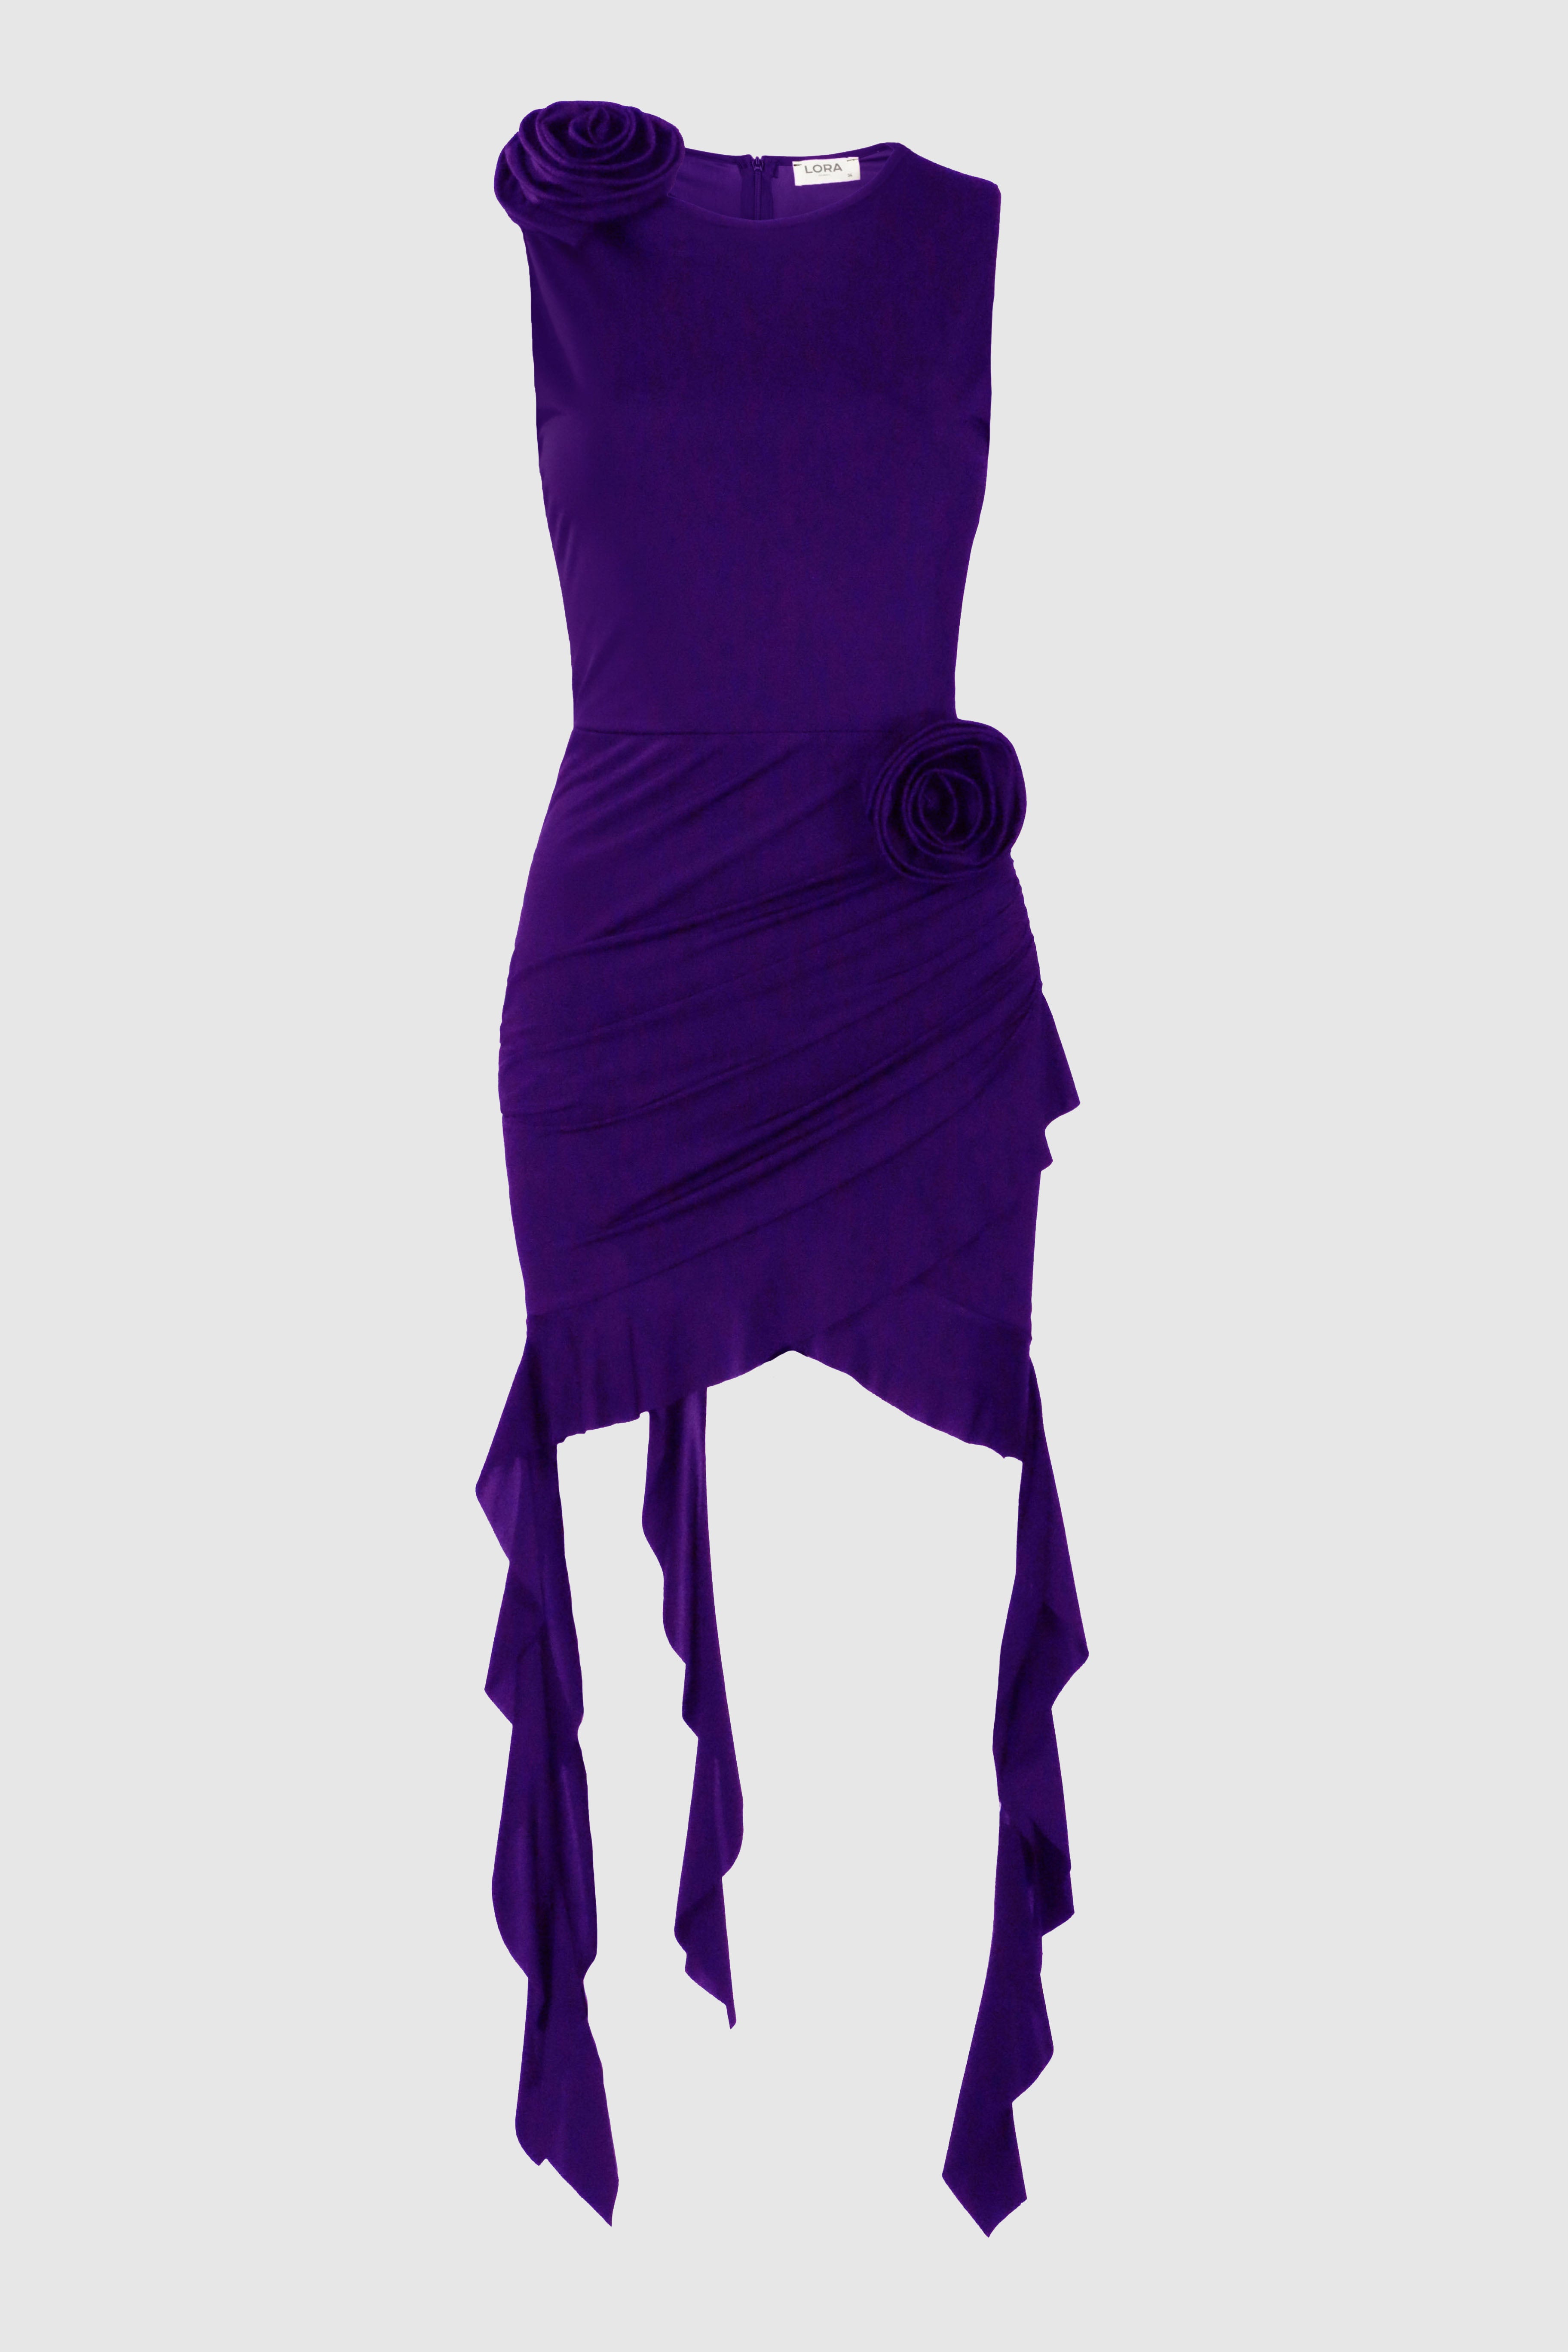 Shelley Purple Ruffled Flower Dress